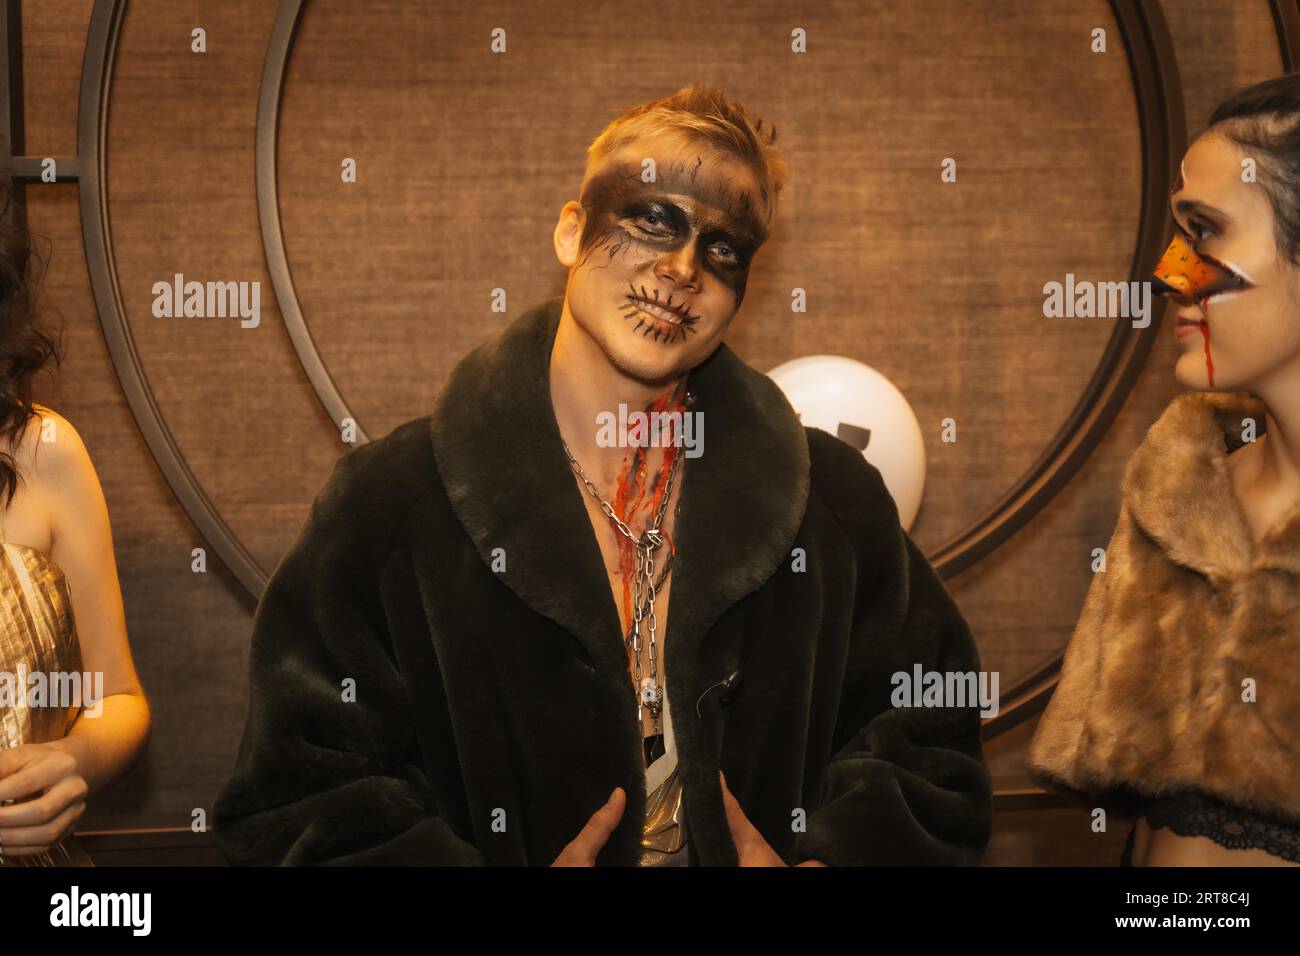 Fête d'Halloween avec des amis dans une discothèque, portrait d'un homme en maquillage zombie Banque D'Images